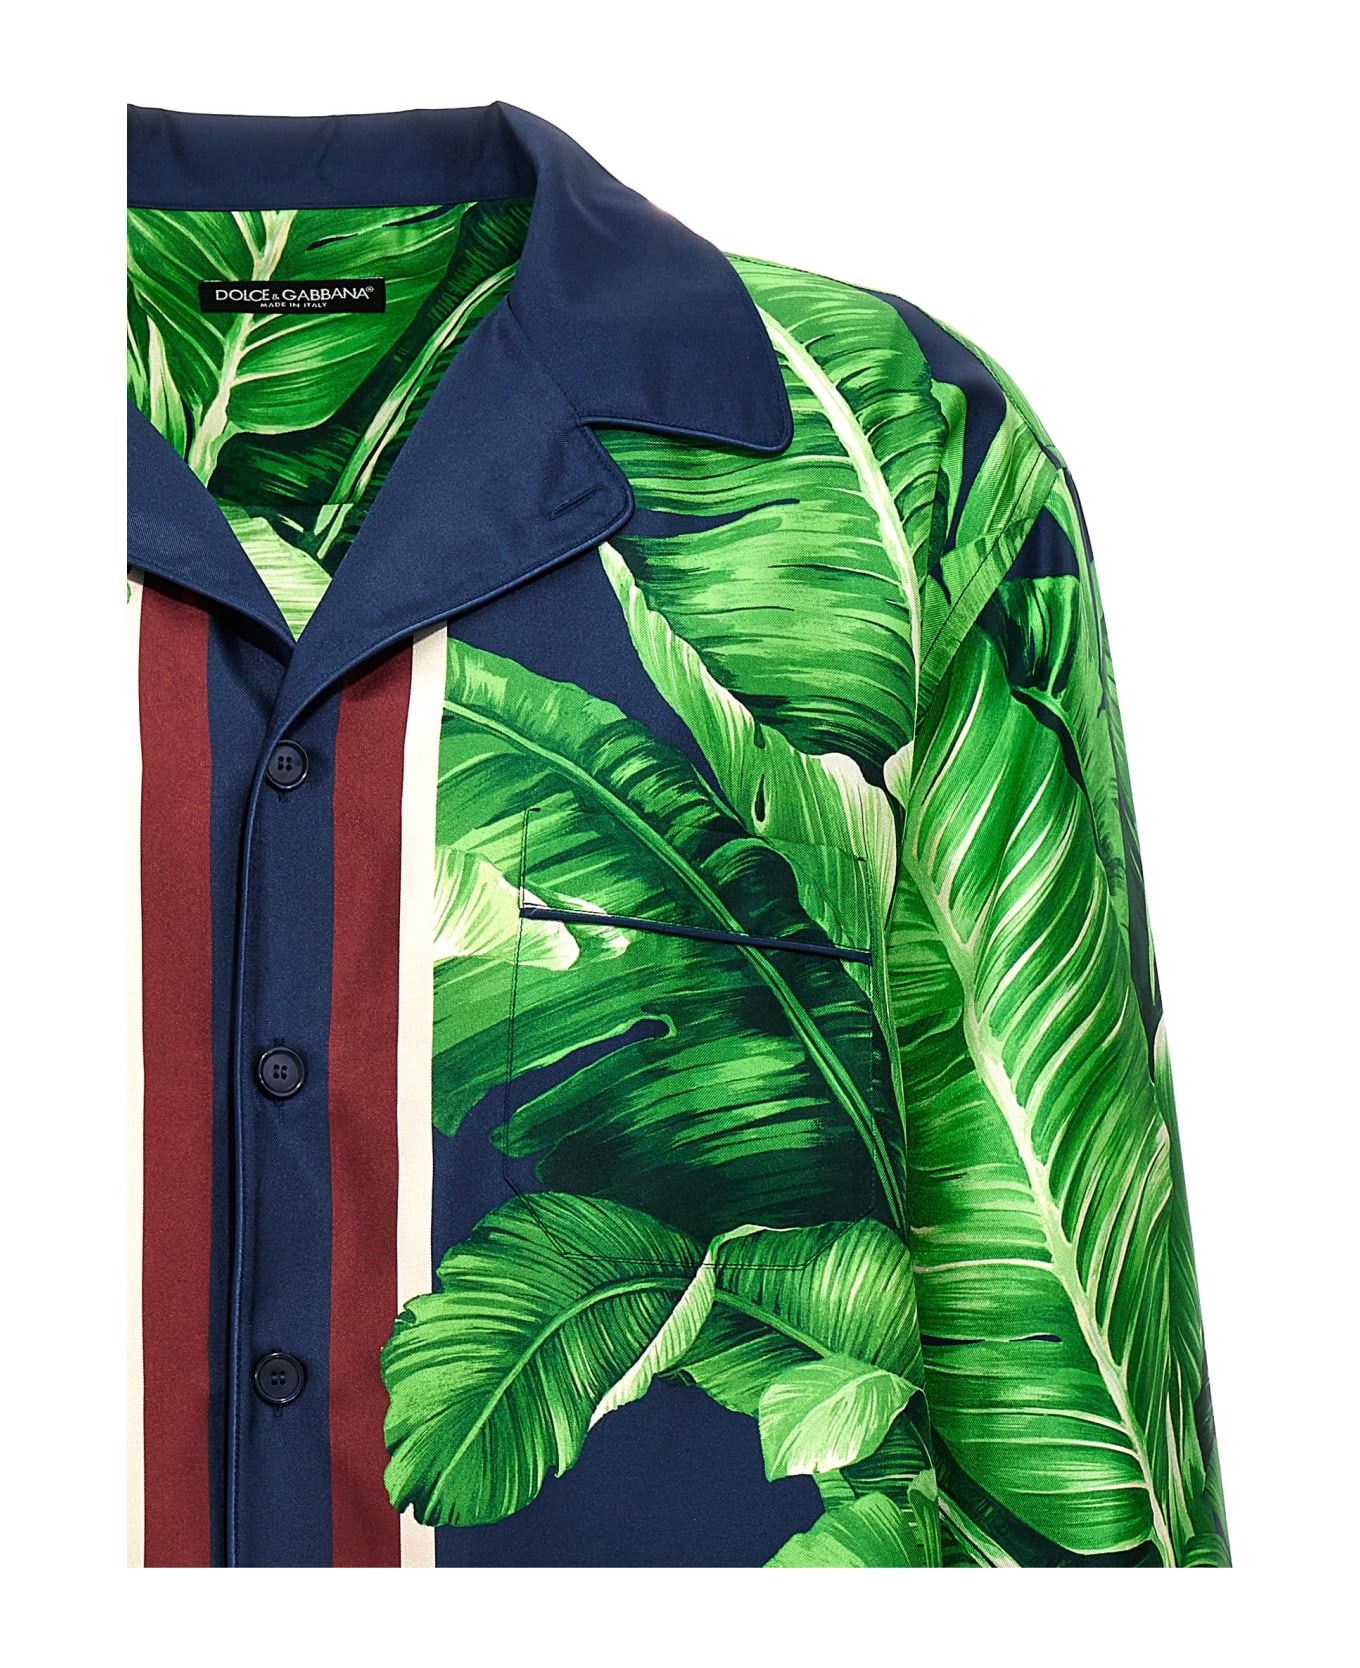 Dolce & Gabbana Banano Silk Shirt - Green